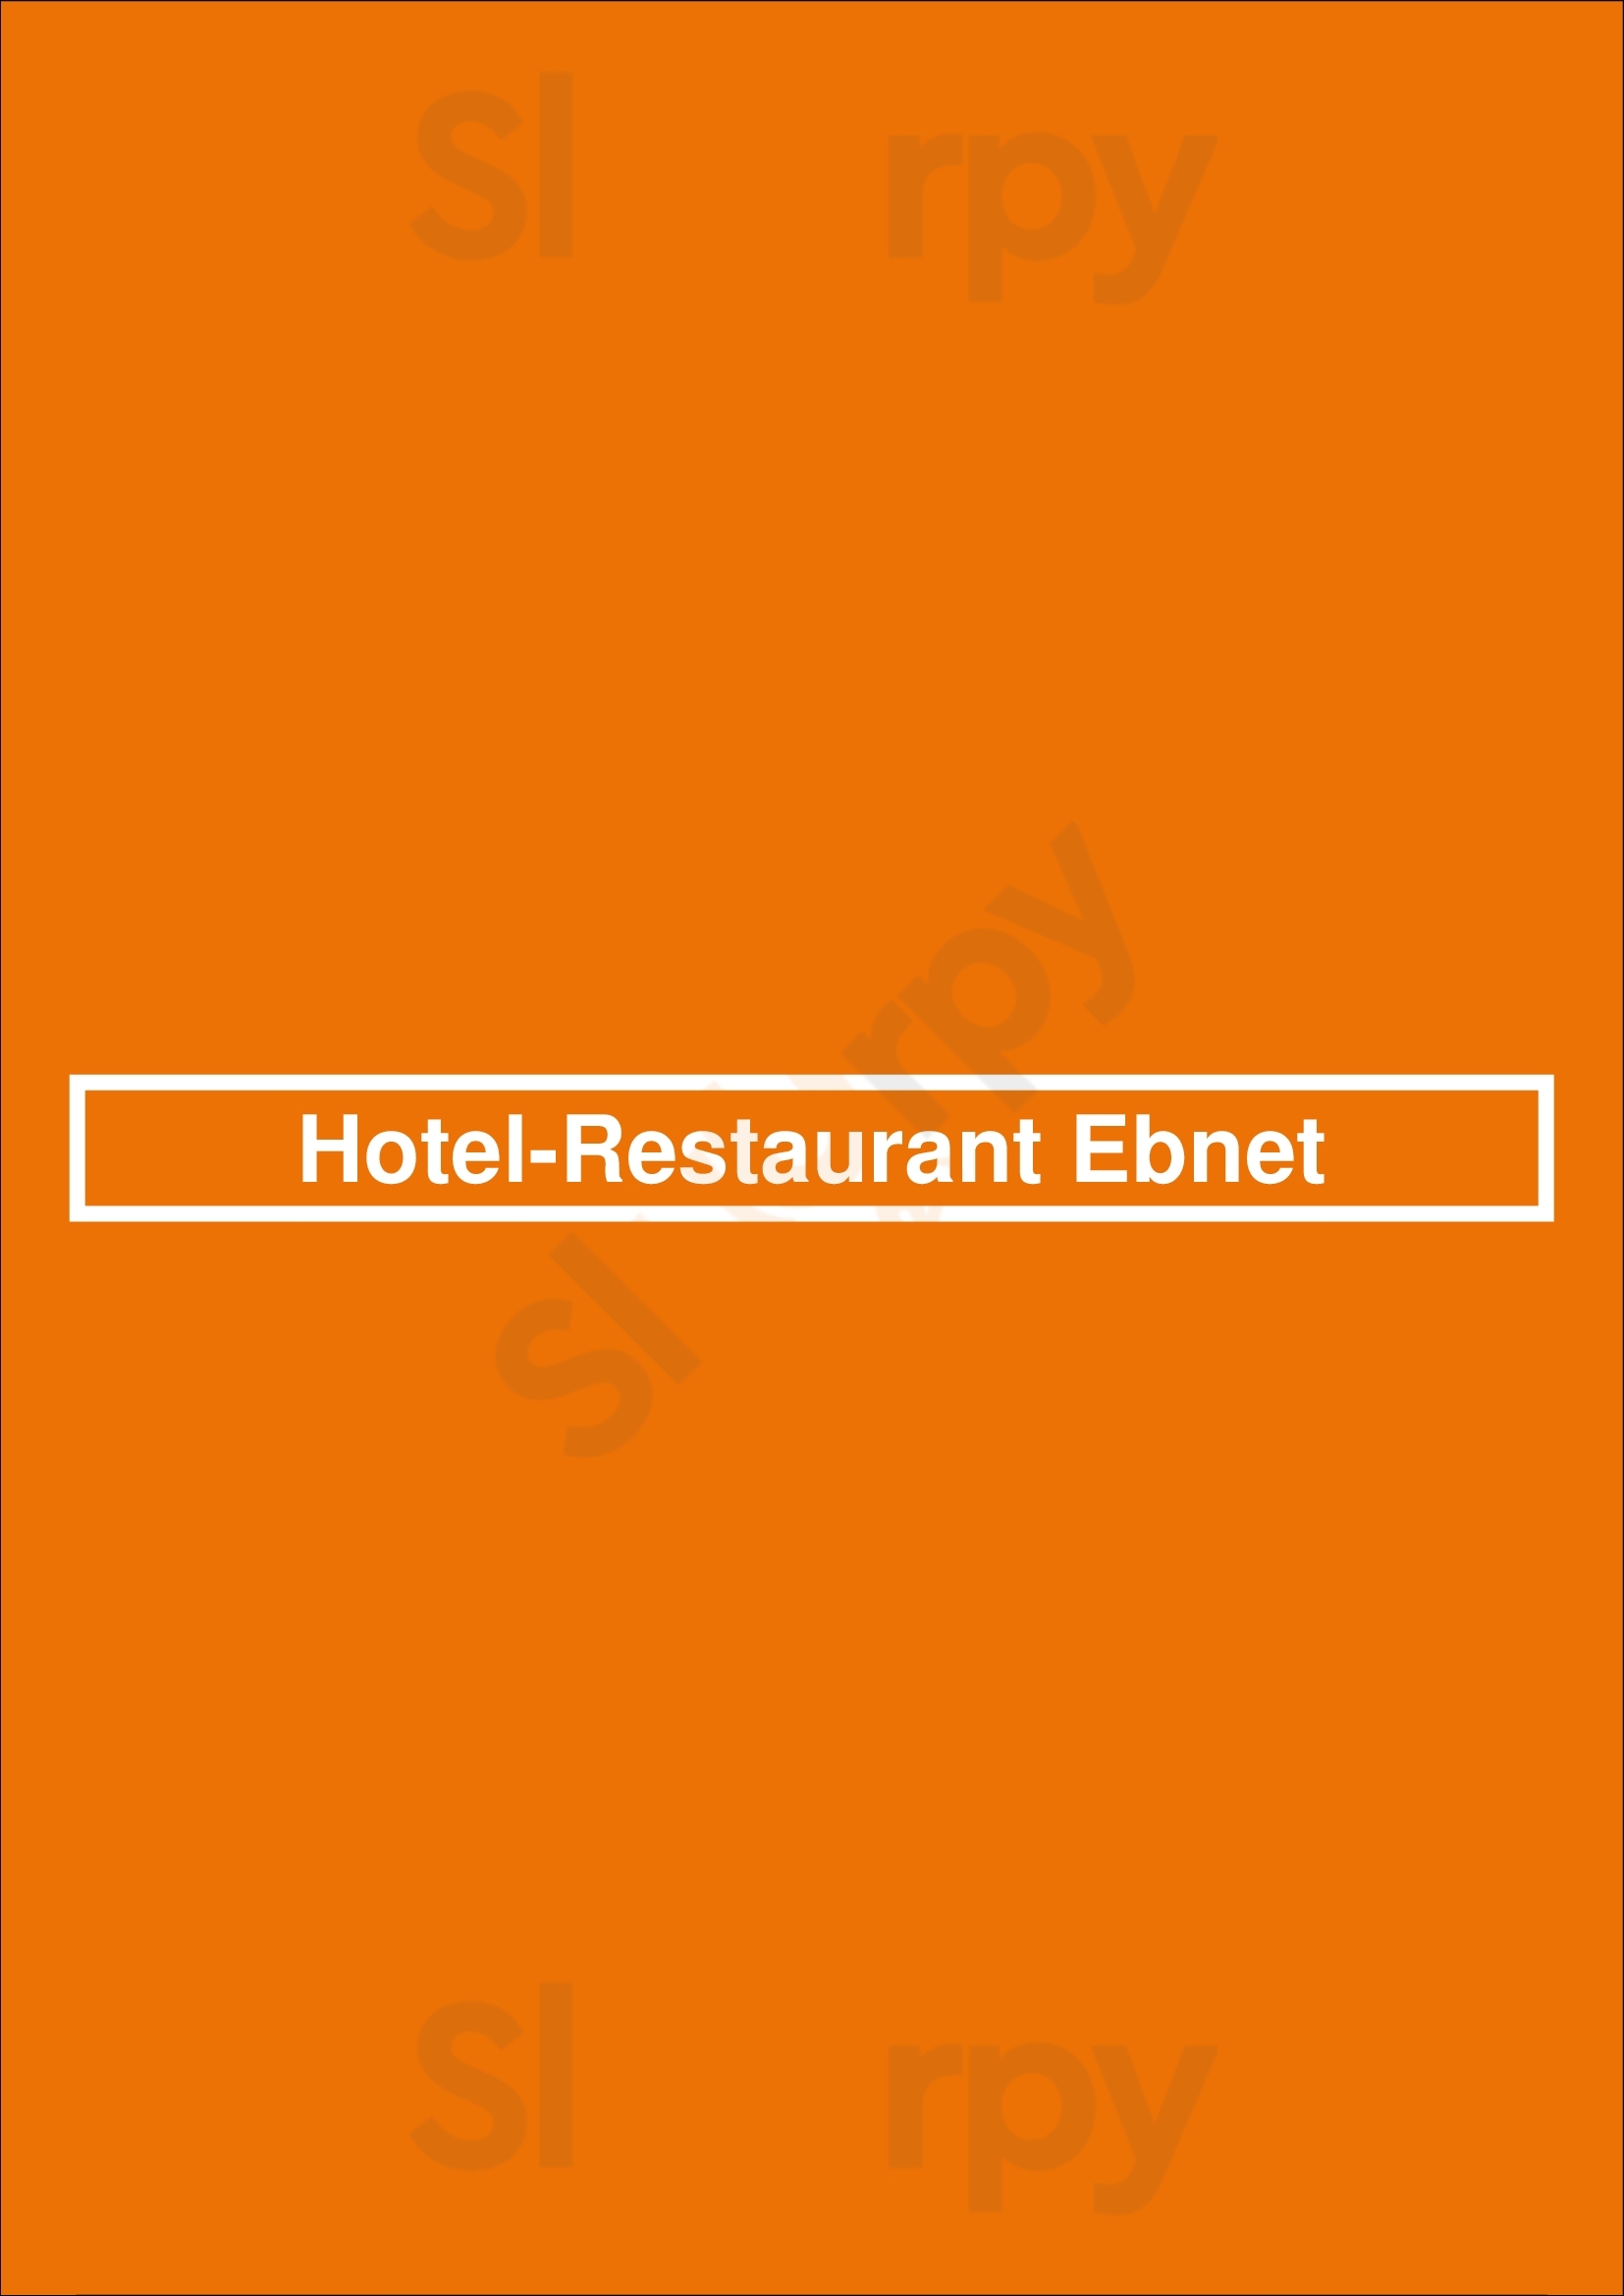 Hotel-restaurant Ebnet Mutterstadt Menu - 1